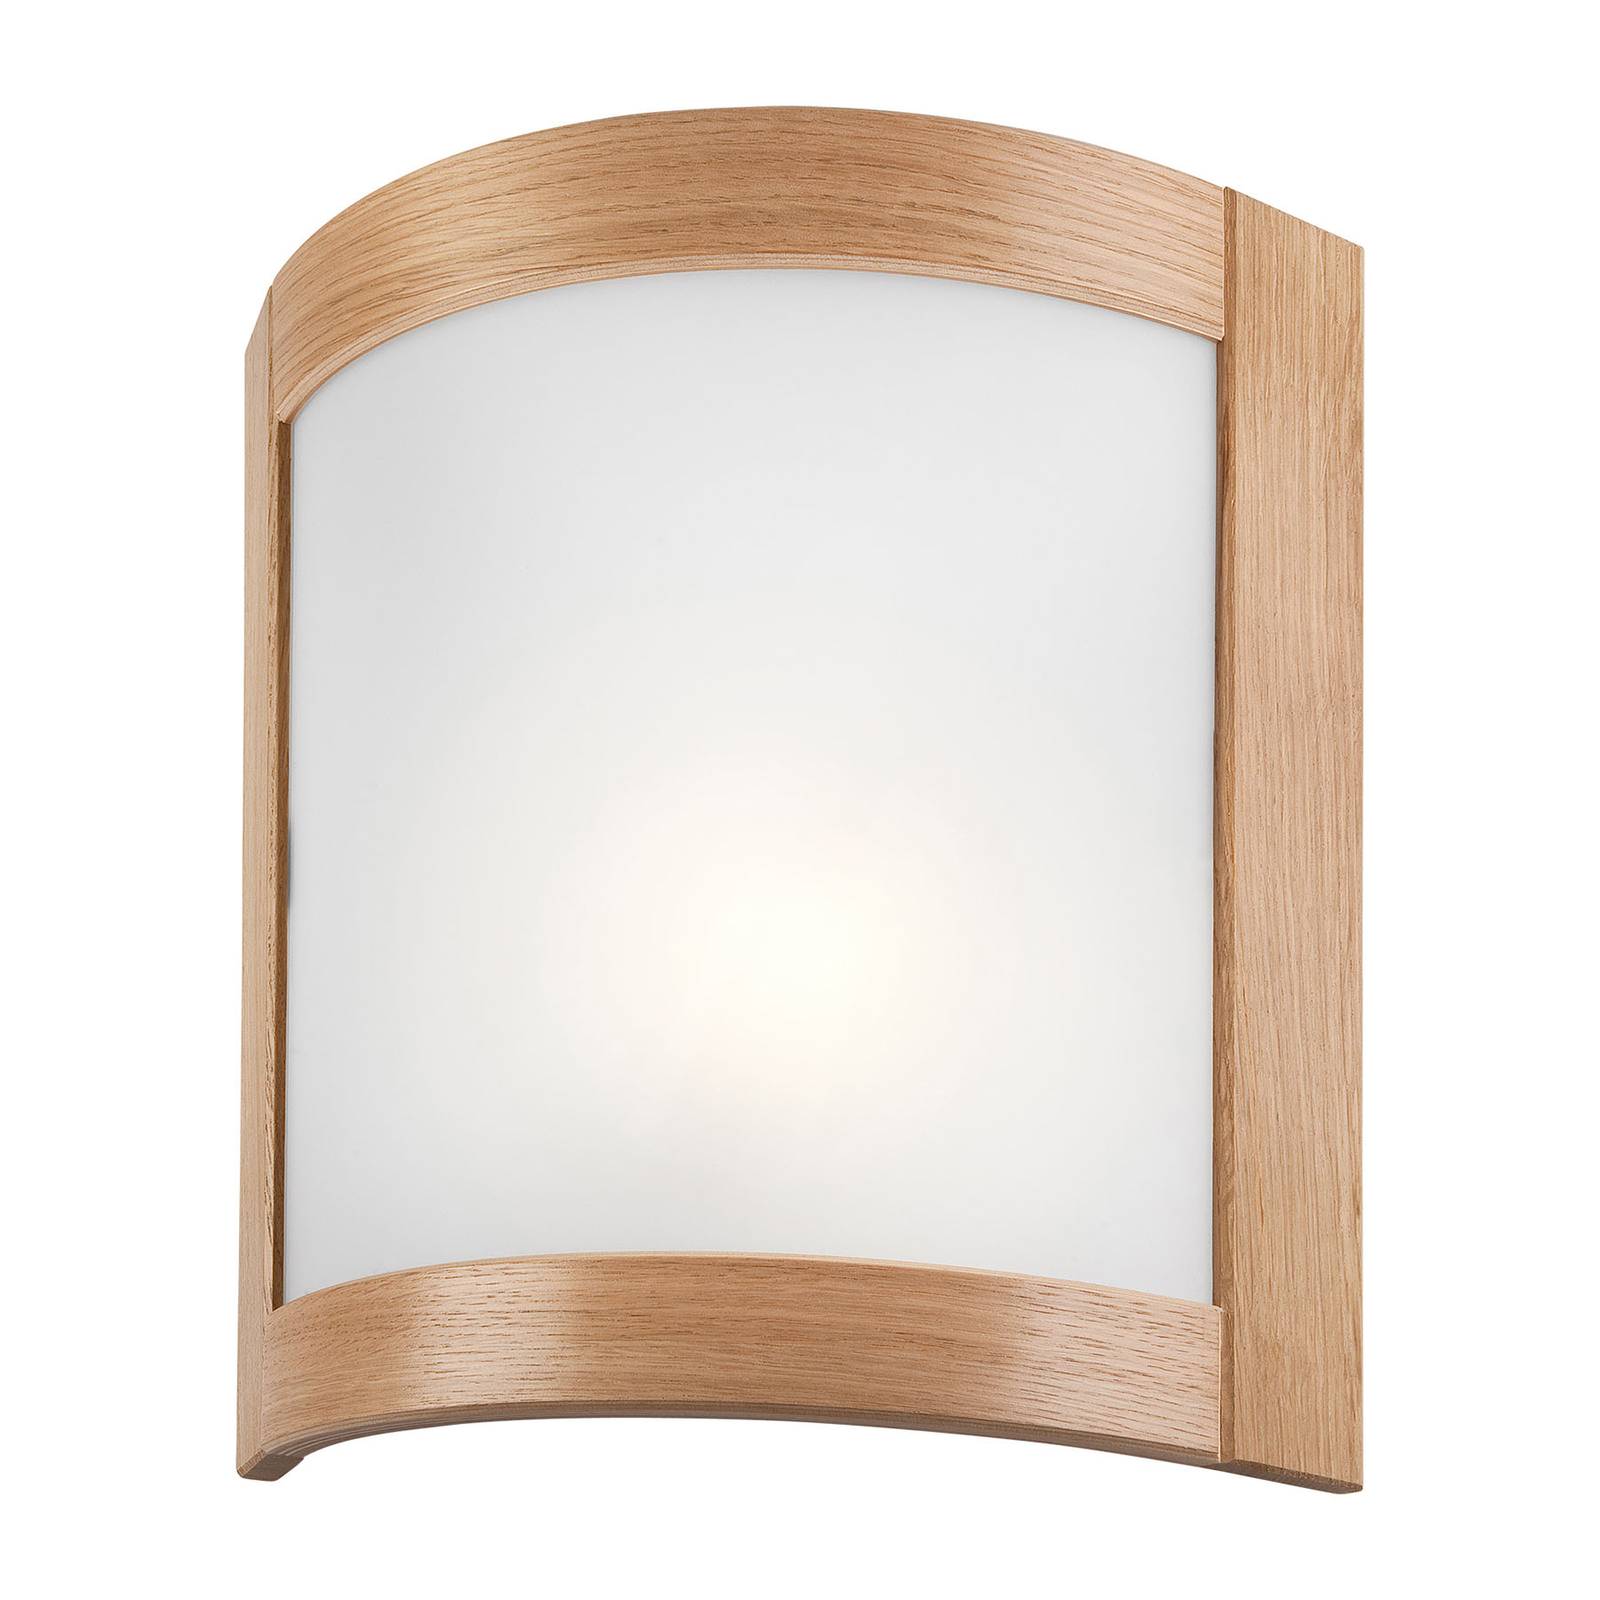 Zanna wall light, wood, 34 cm high, light oak